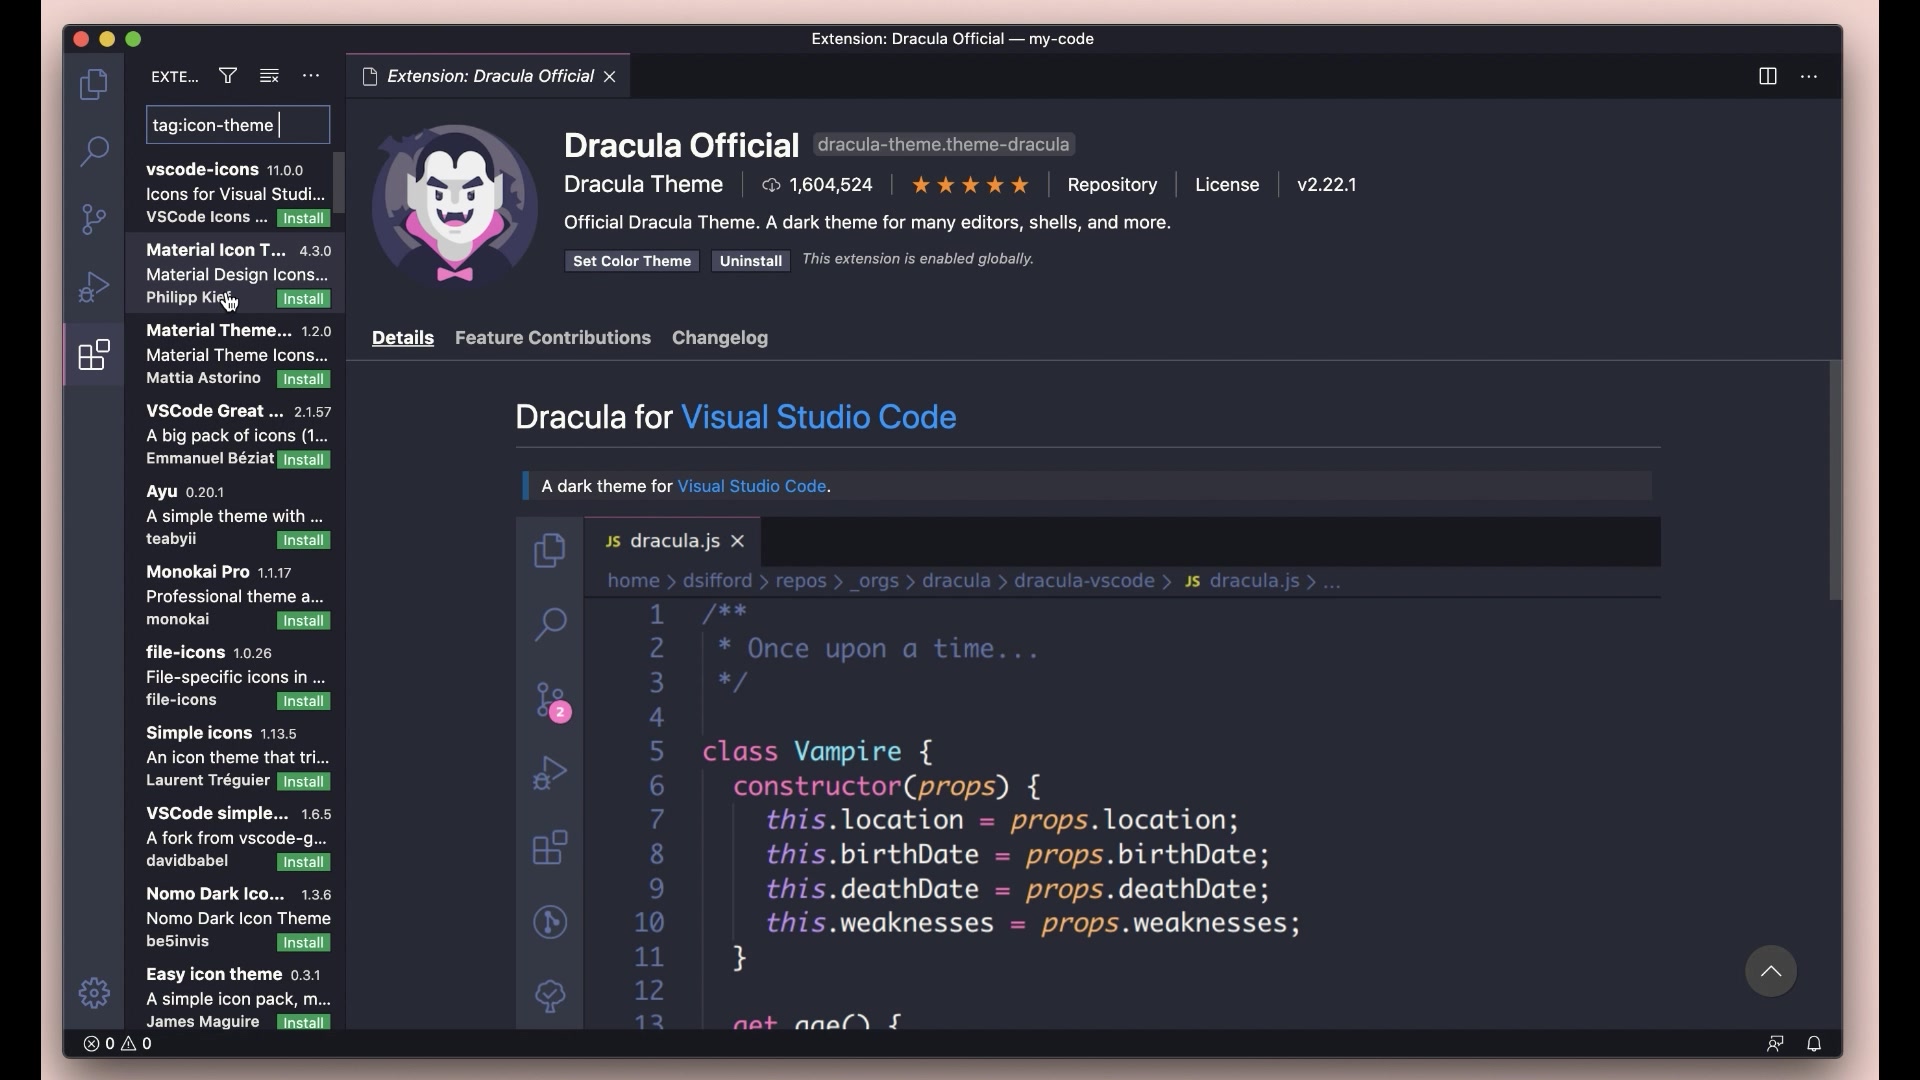 Cá nhân hóa Visual Studio Code giúp cho bạn thể hiện phong cách và cá tính của riêng mình trong quá trình lập trình. Với hình ảnh liên quan đến từ khóa này, bạn sẽ dễ dàng tìm hiểu và áp dụng các tính năng customize để tạo ra một giao diện lập trình độc đáo.